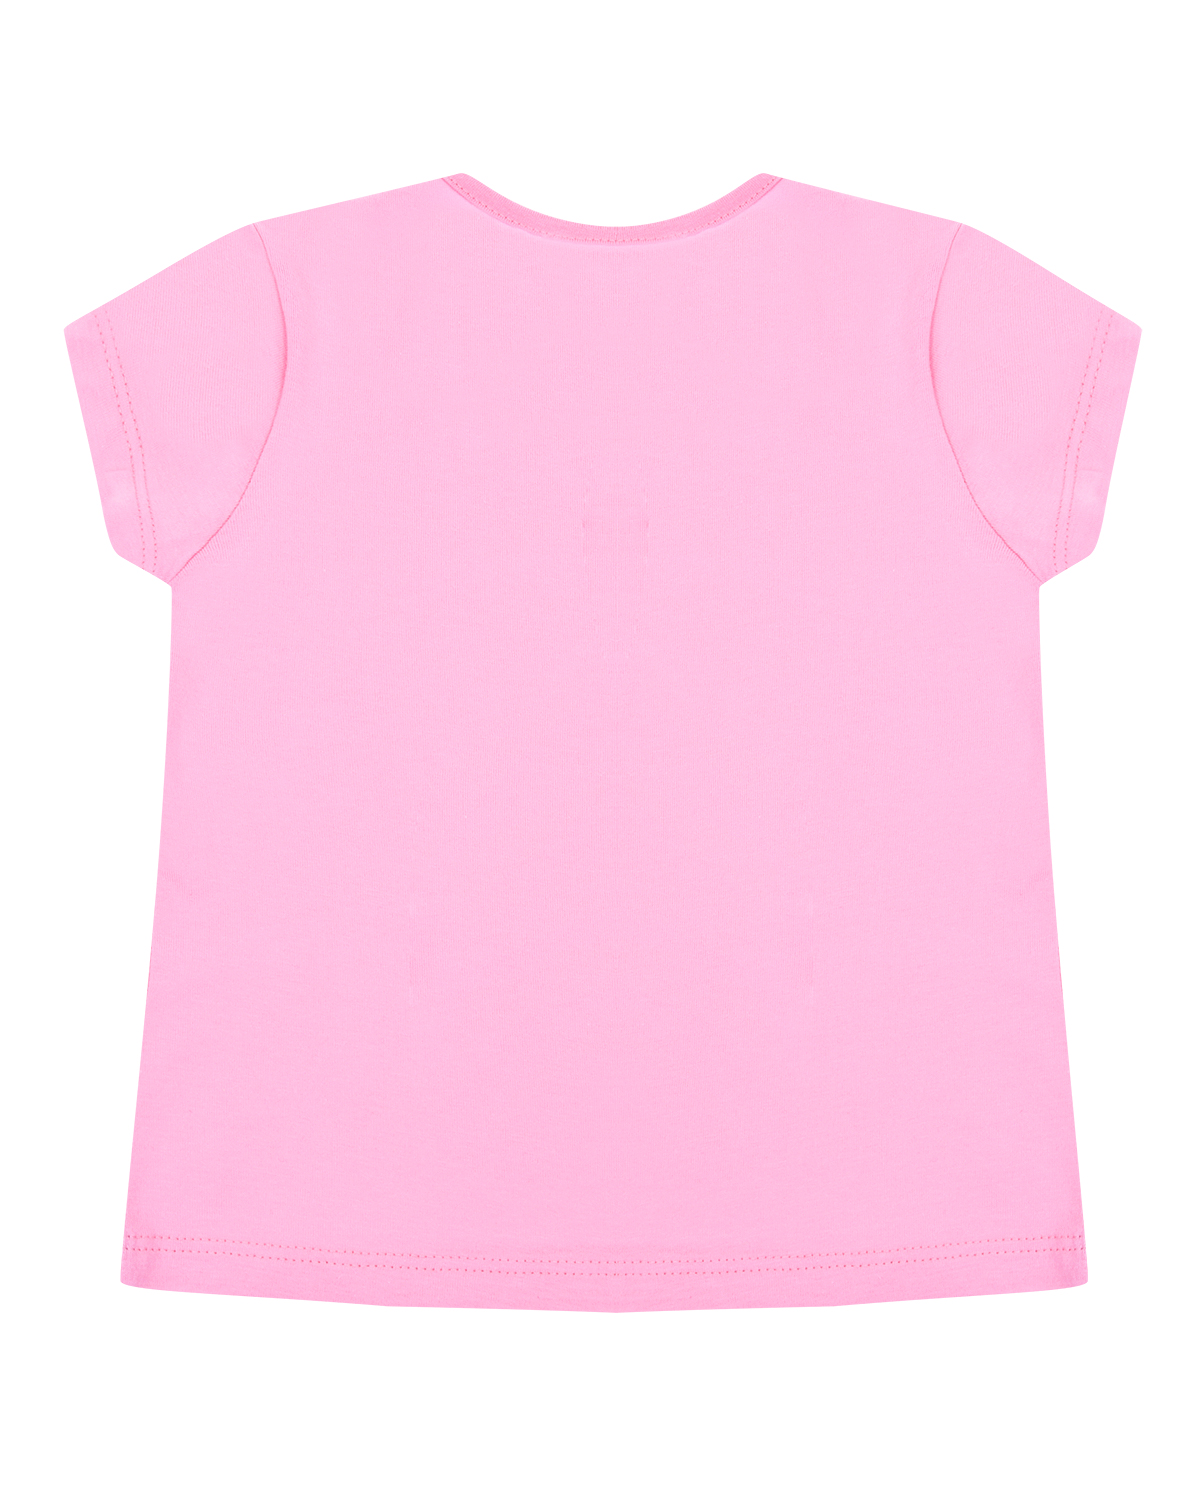 Розовая футболка с принтом "Коала на ветке" Sanetta Kidswear детская - фото 2